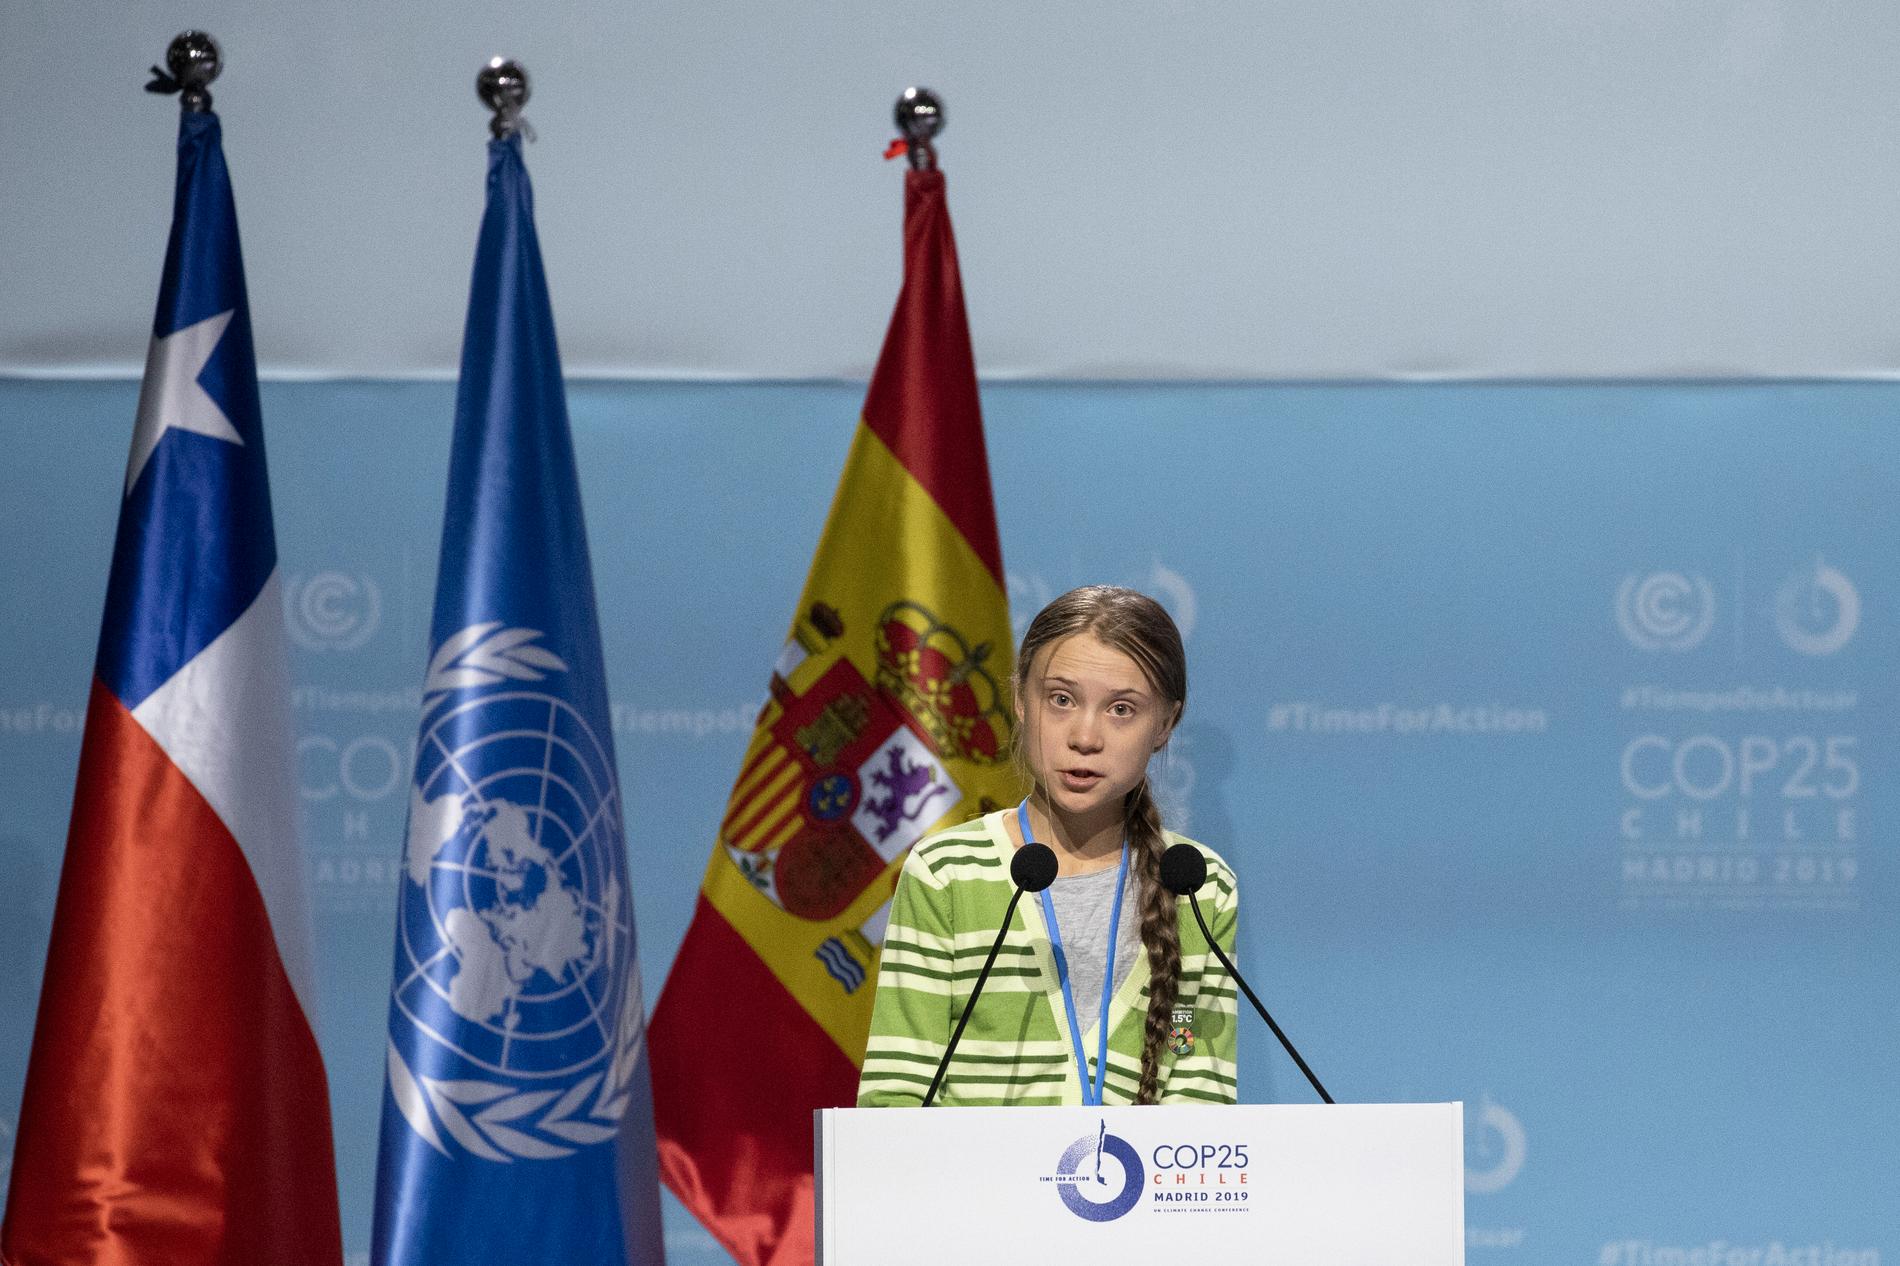 Klimataktivisten Greta Thunberg talade inför delegater vid FN:s klimatmöte COP25 i Madrid på onsdagsförmiddagen.